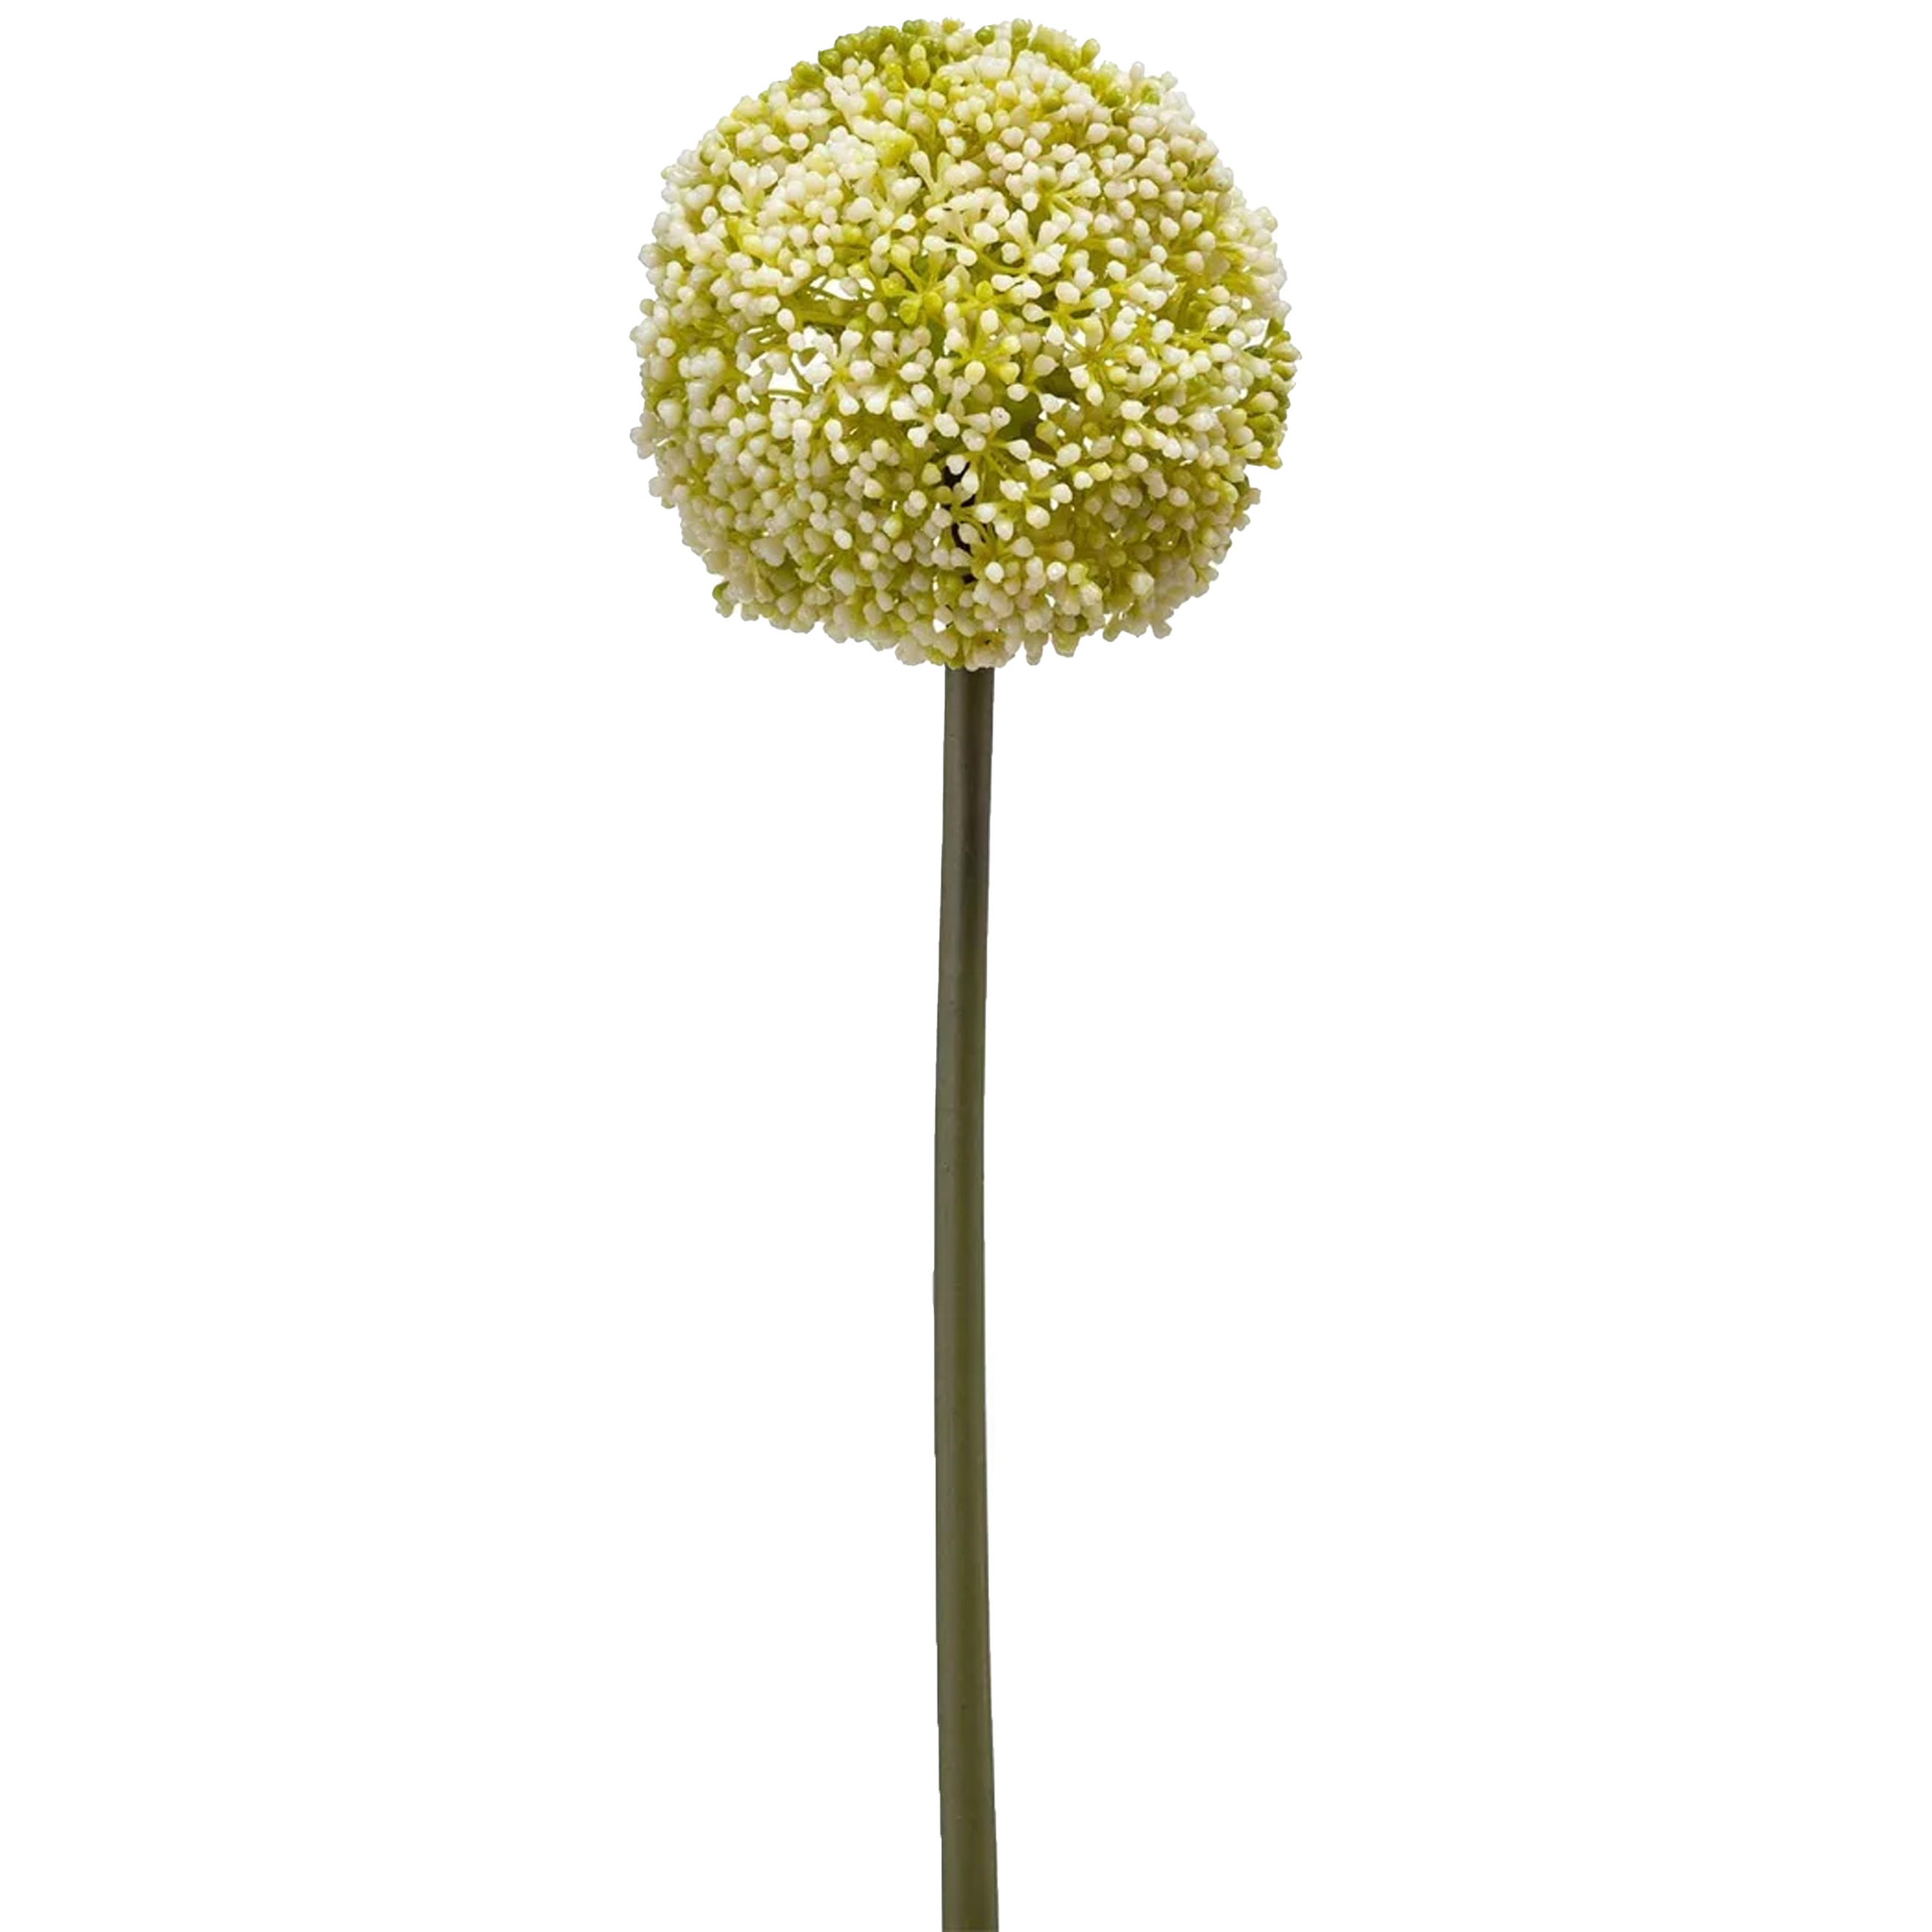 Allium-Sierui kunstbloem losse steel wit-groen 75 cm Natuurlijke uitstraling